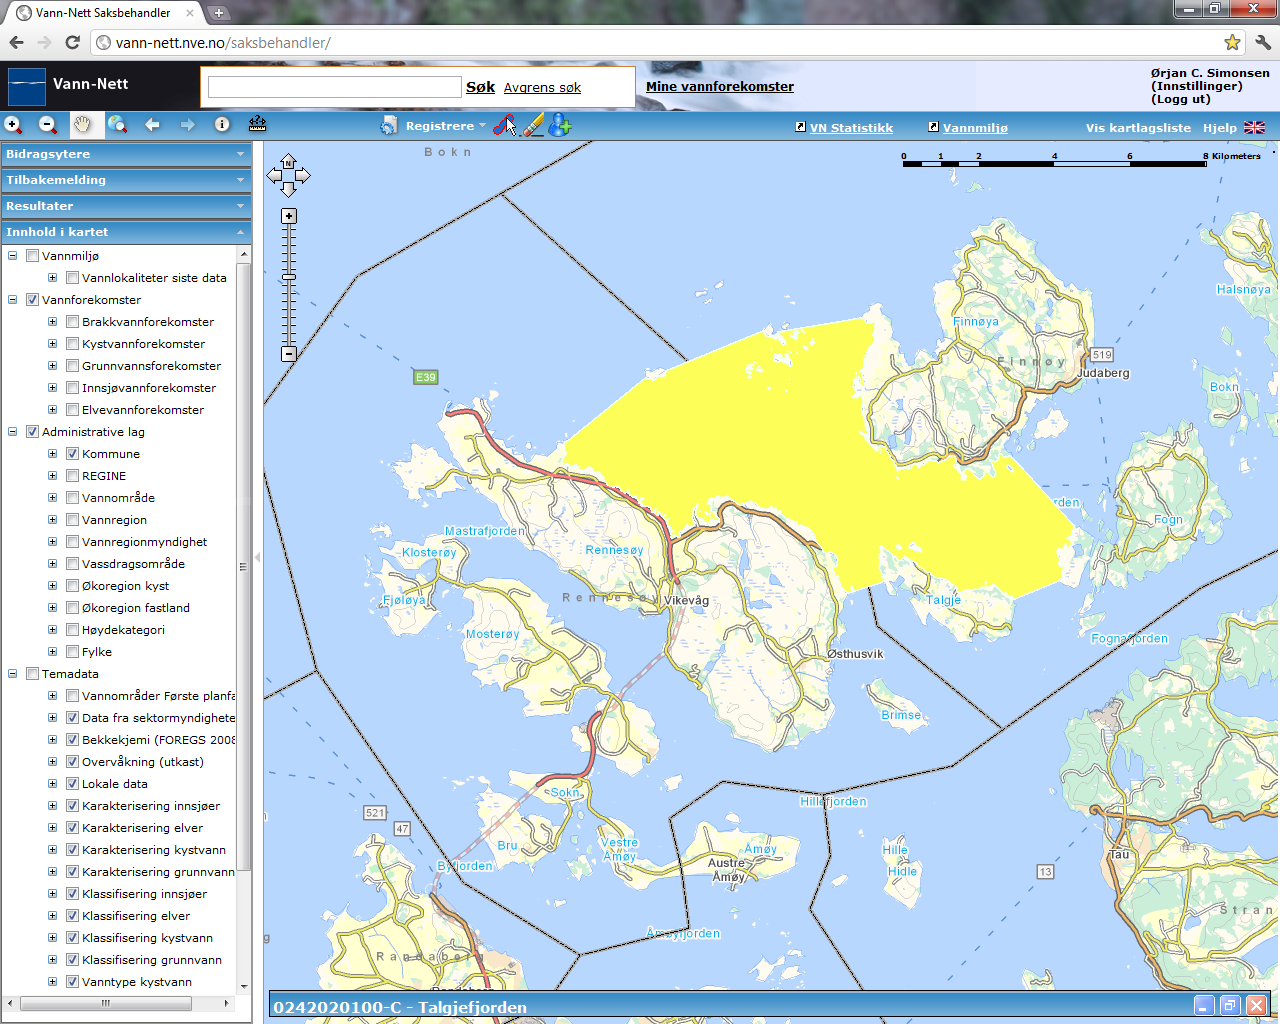 Talgjefjorden (0242020100-C) Overvåkingsdata mm: Moderat (bunndyr: moderat) Risiko Middels grad Fiskeoppdrett MOM-C